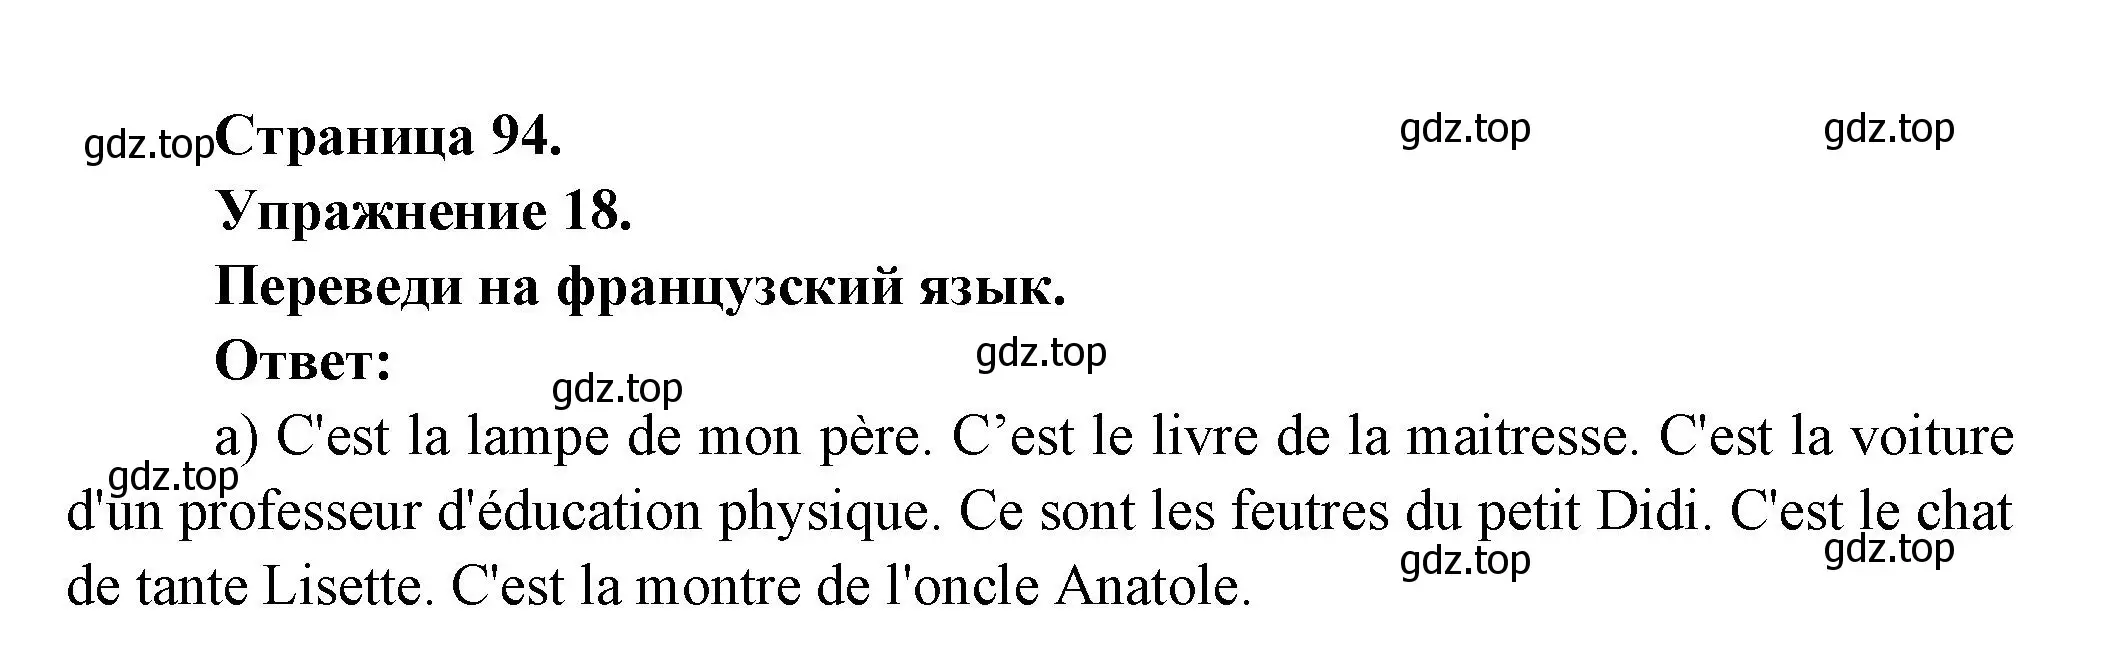 Решение номер 18 (страница 94) гдз по французскому языку 5 класс Береговская, Белосельская, учебник 1 часть